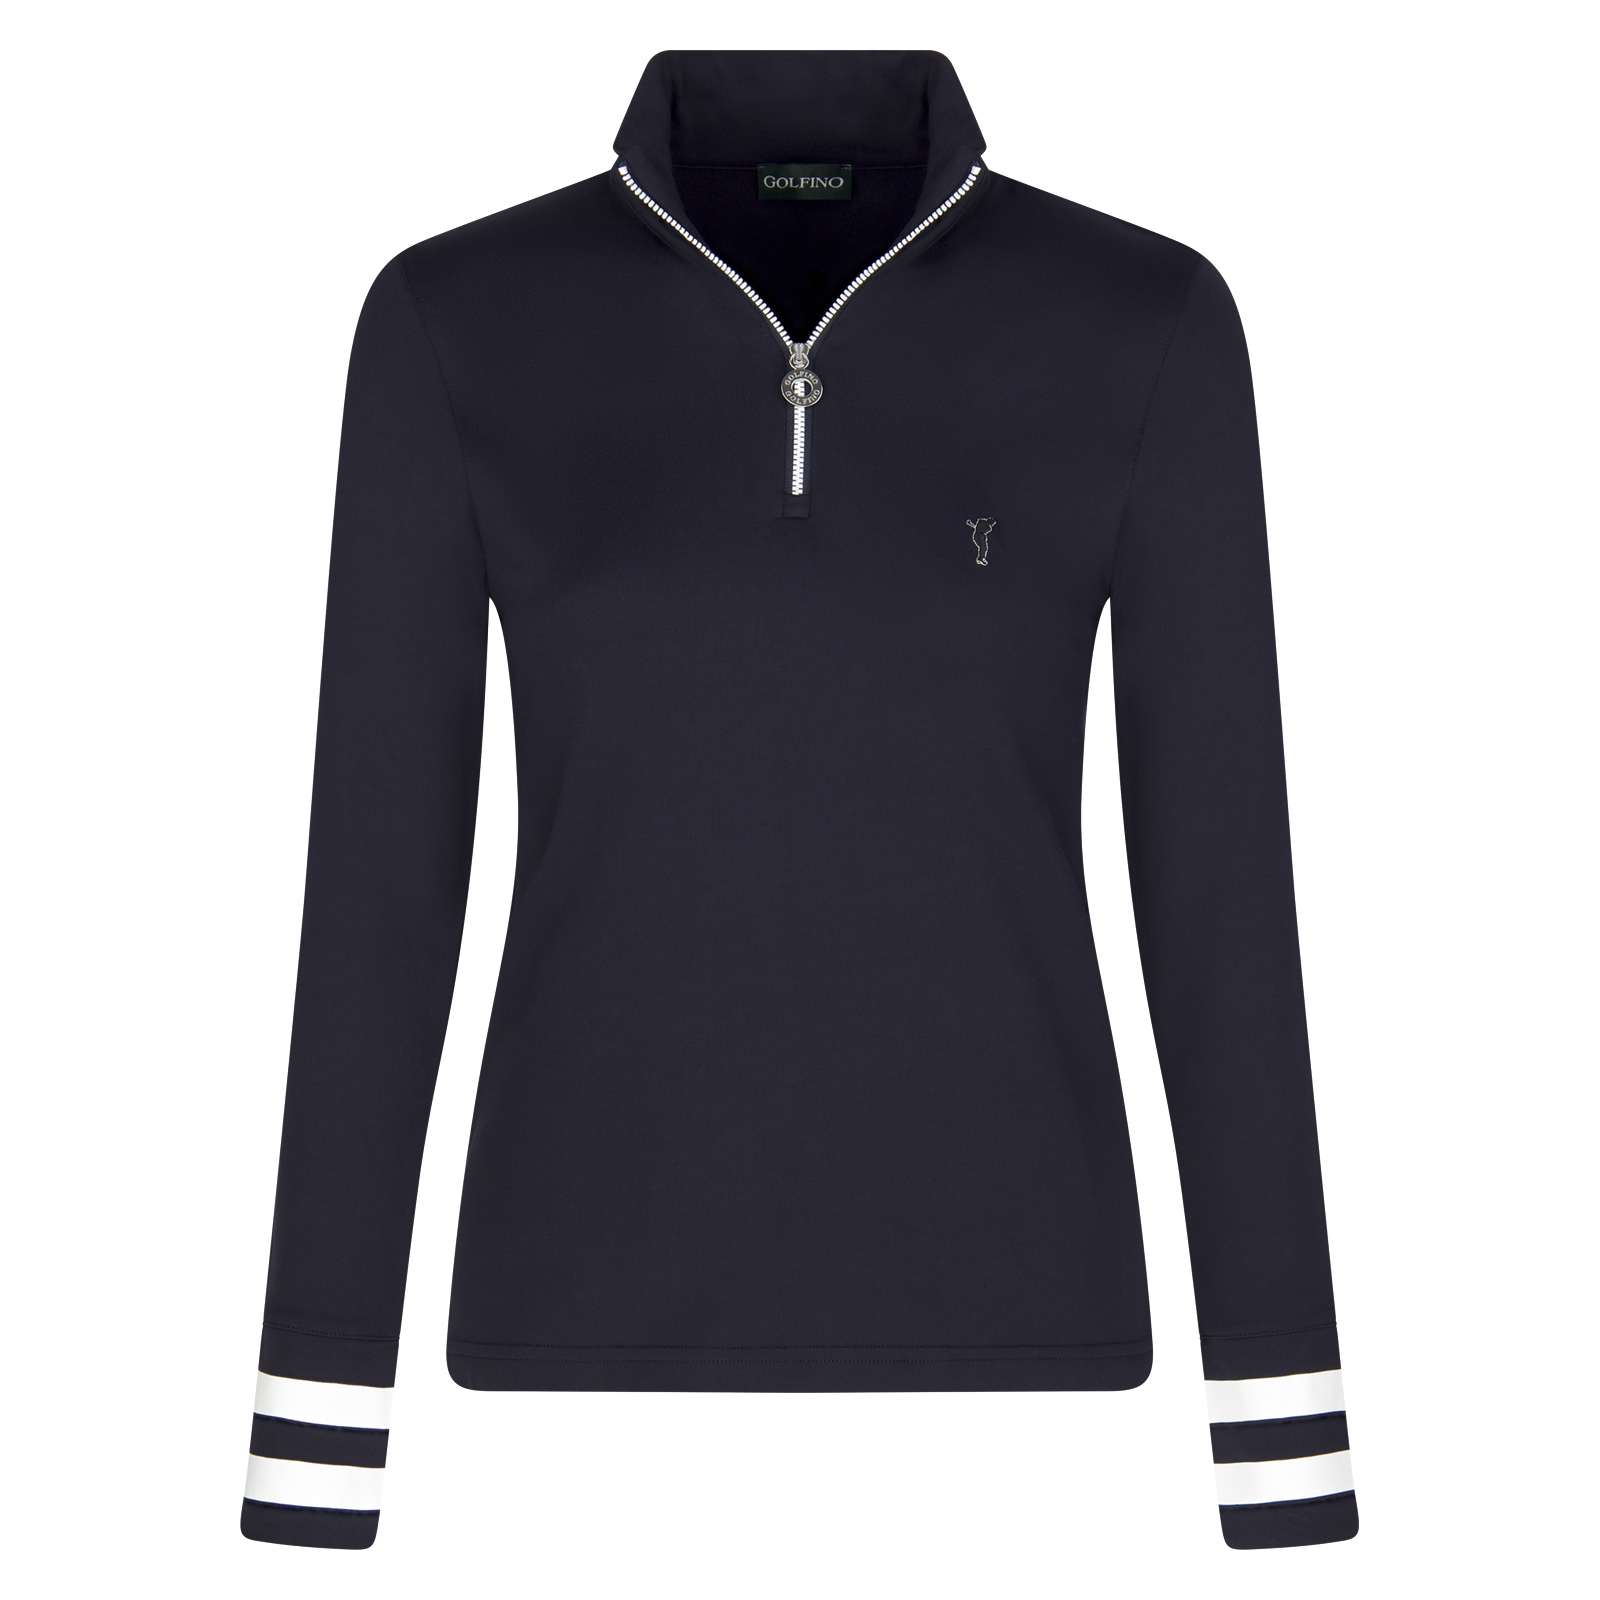 Moderno jersey de golf con control de la humedad y protección contra el frío para mujer